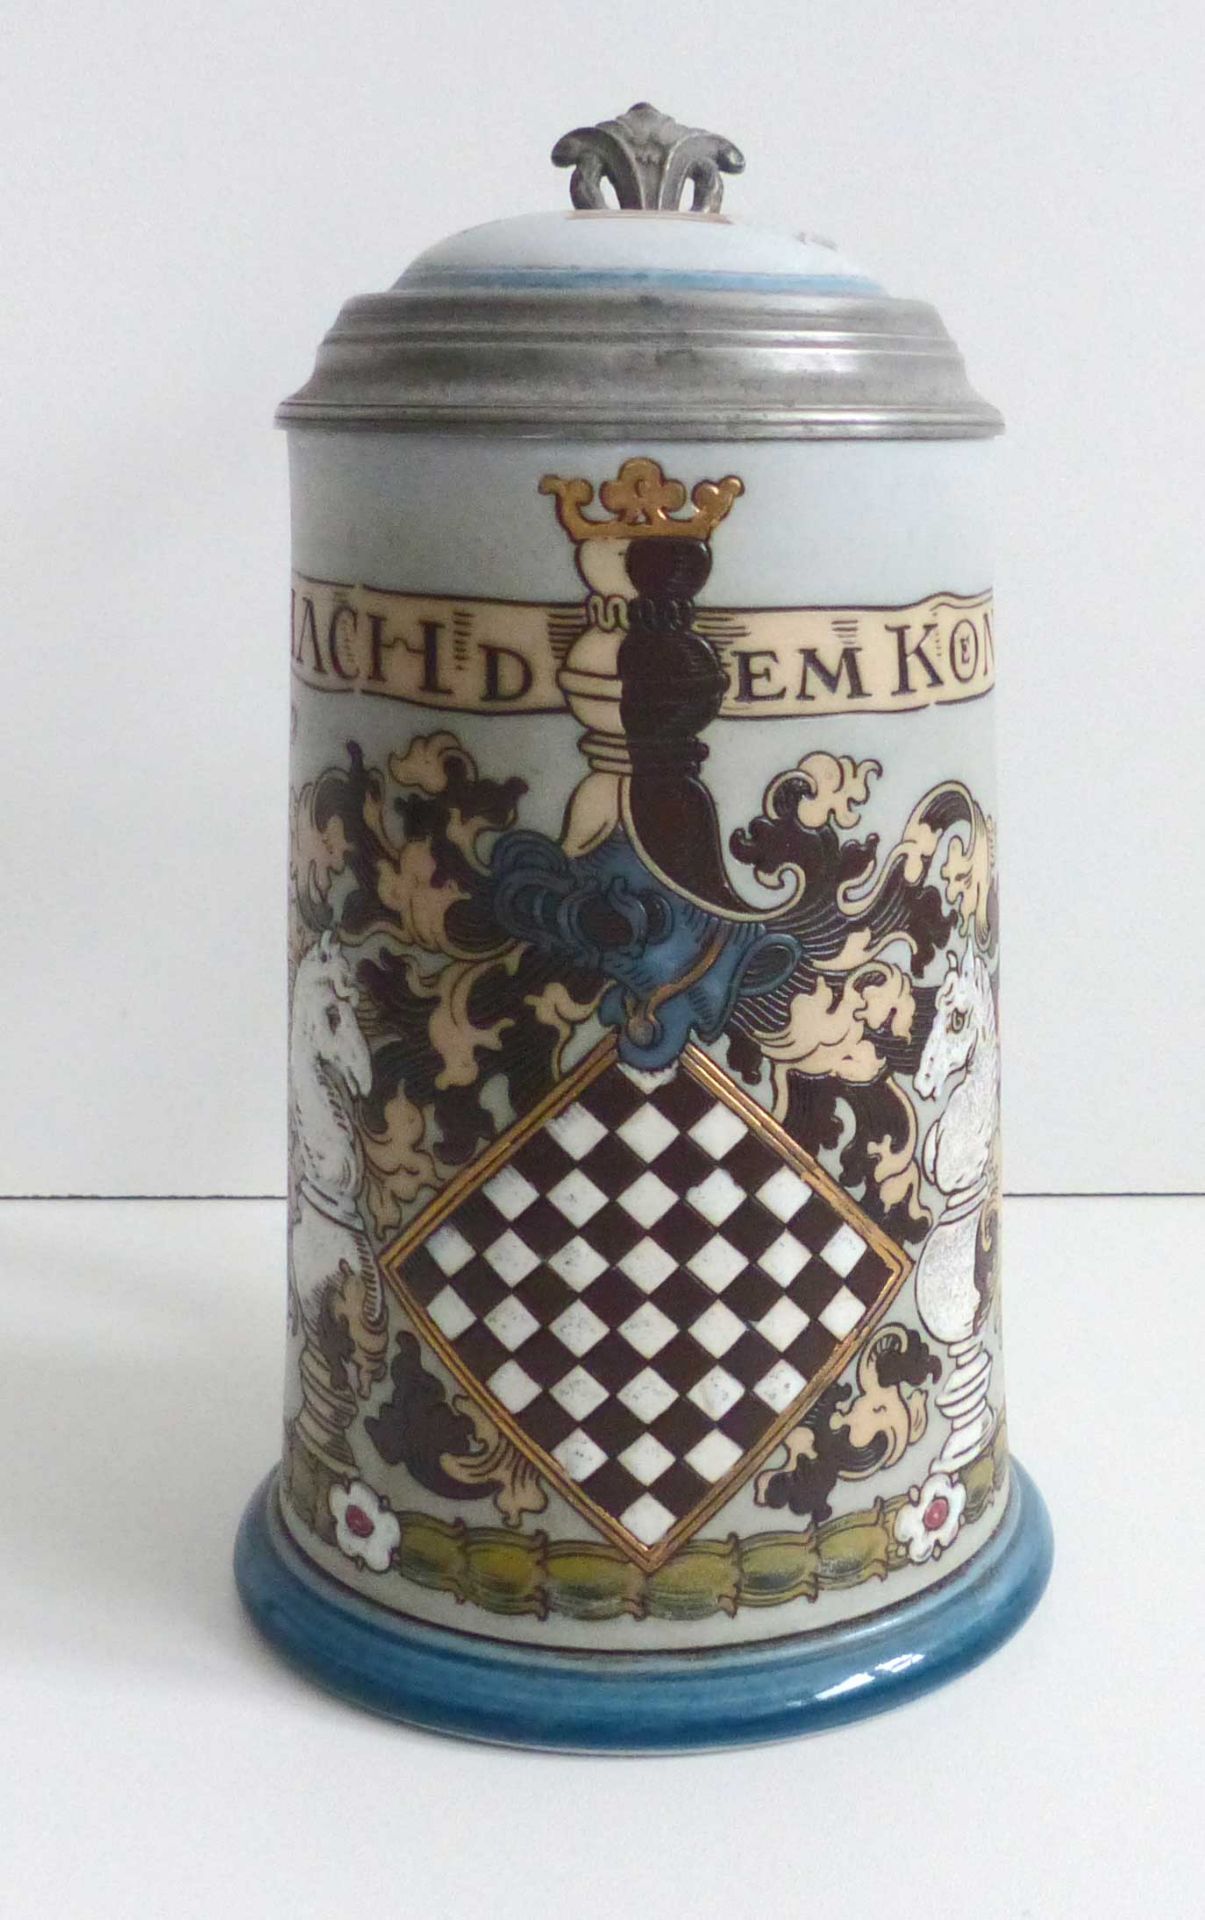 Schach Bierkrug Mettlach mit Zinndeckel Ludorum Schach dem Könige, H=20 cm 0,5 L, sehr selten! - Bild 4 aus 5